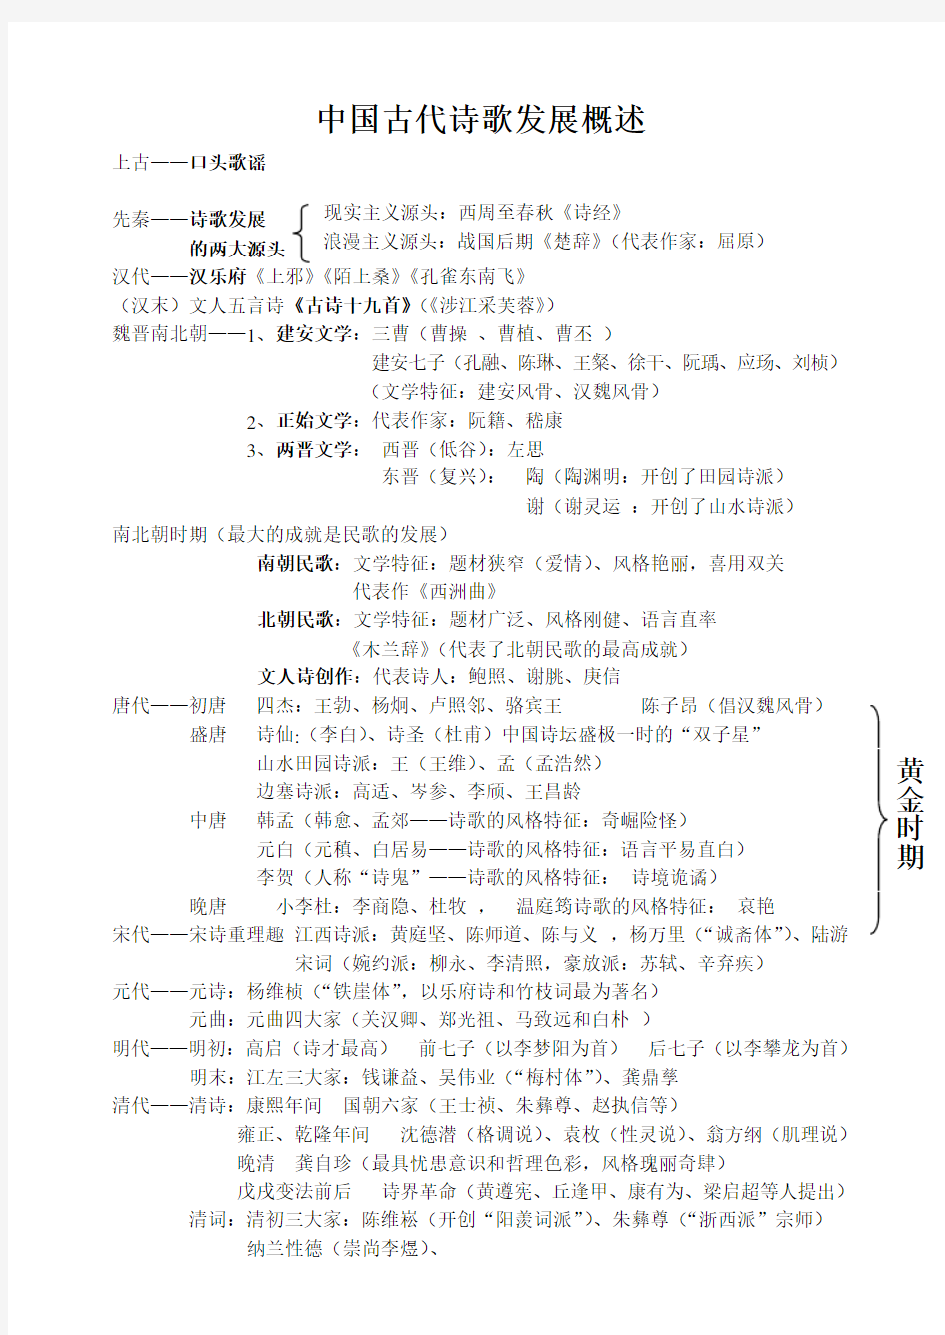 中国古代诗歌发展概述简表